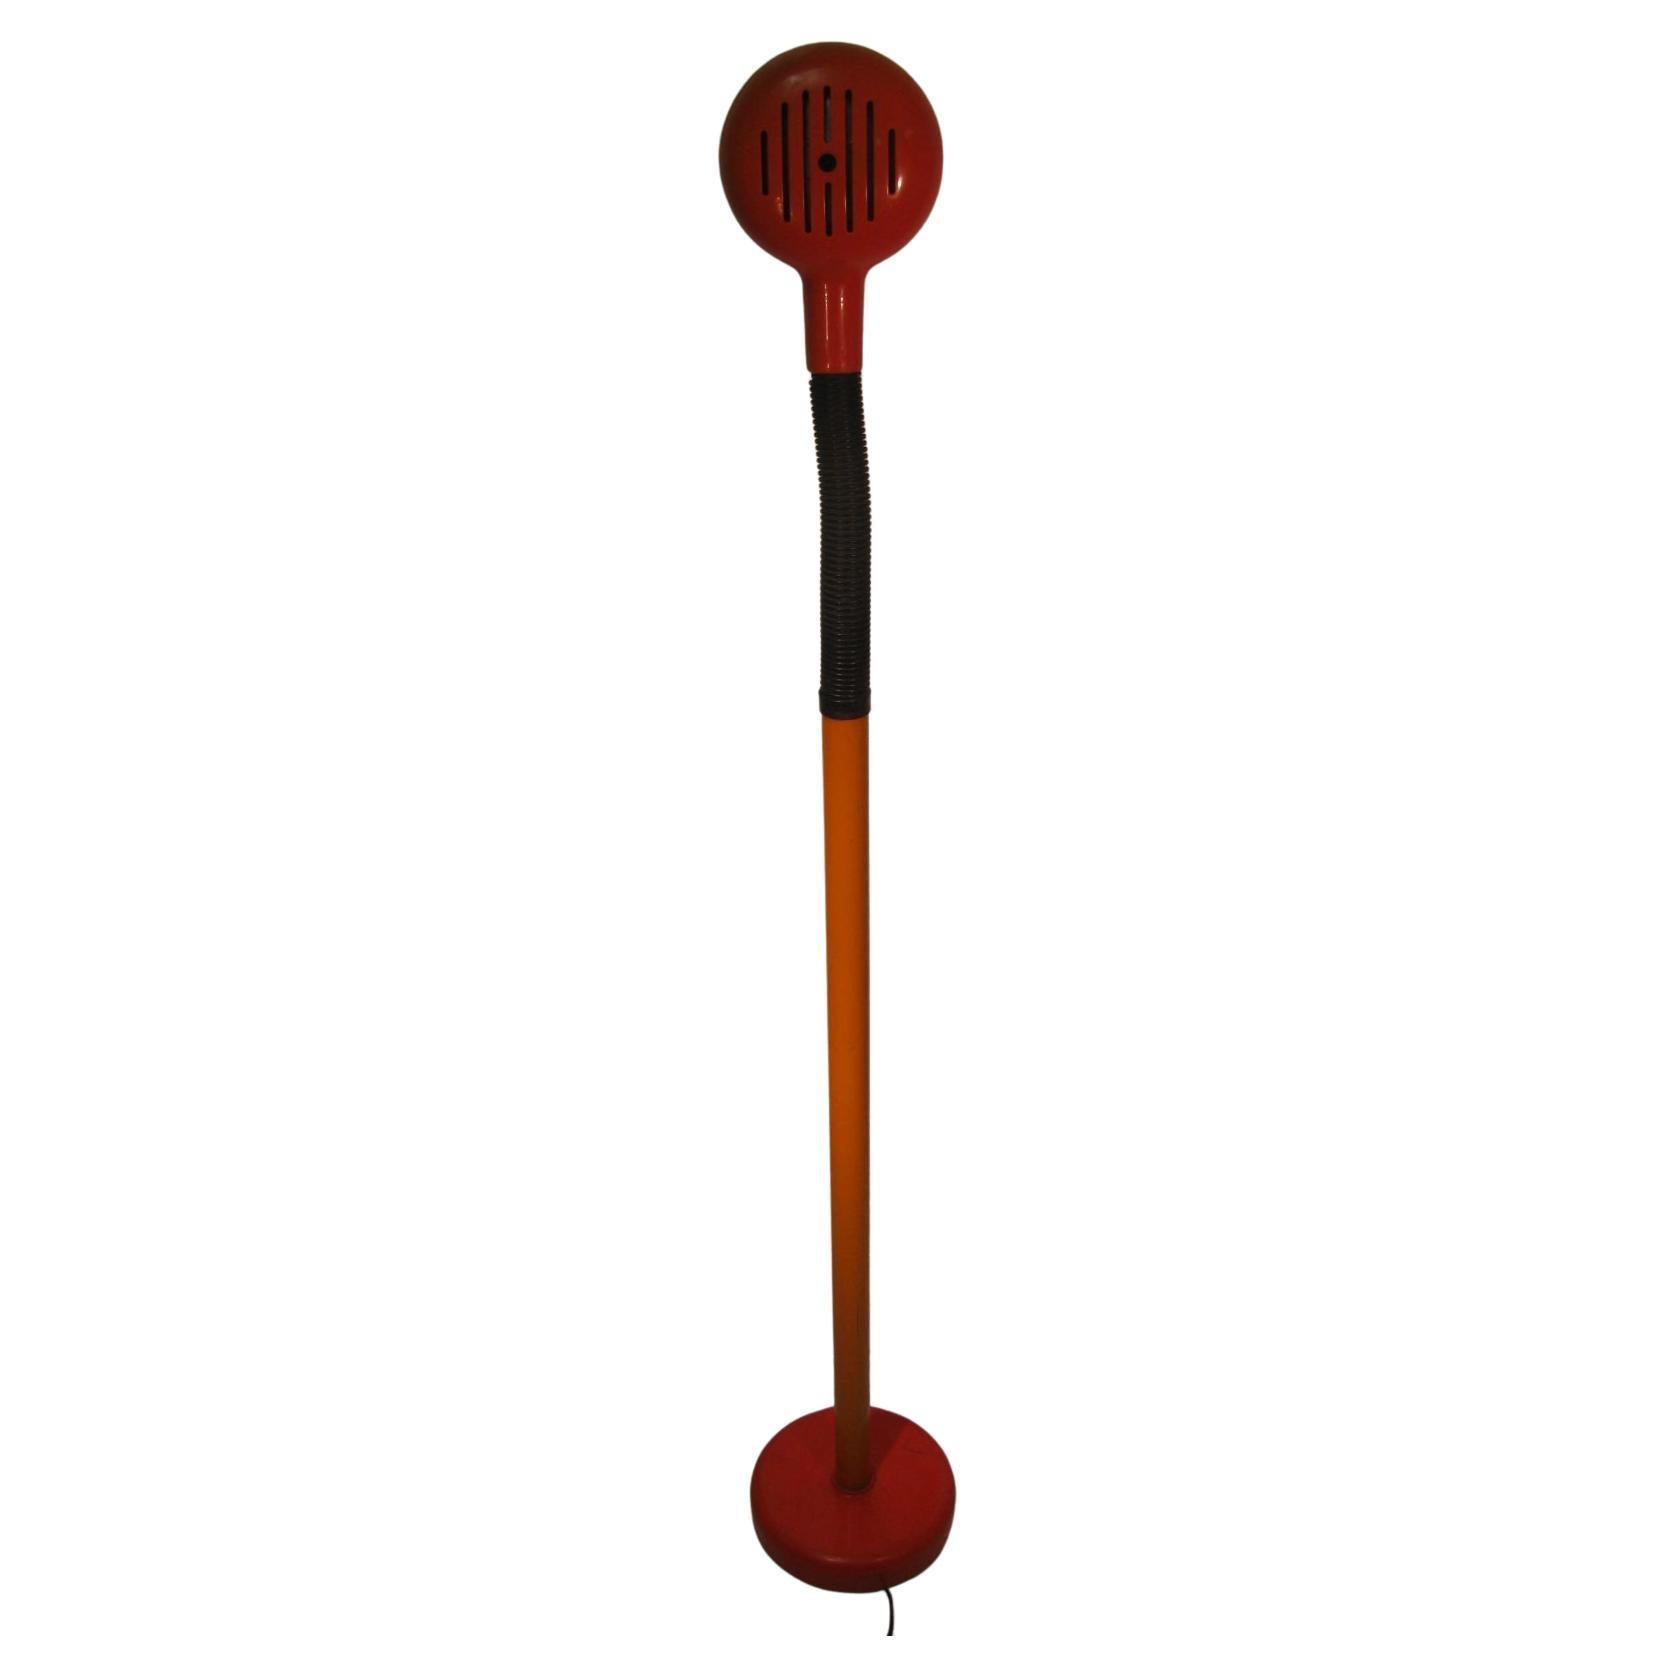 Fantastique lampadaire en plastique flexible. Orange du milieu des années 1960 avec un cou flexible pour une plus grande maniabilité lors du positionnement. La lampe mesure 44 pouces de haut lorsqu'elle est en position de flexion de lecture. Tout